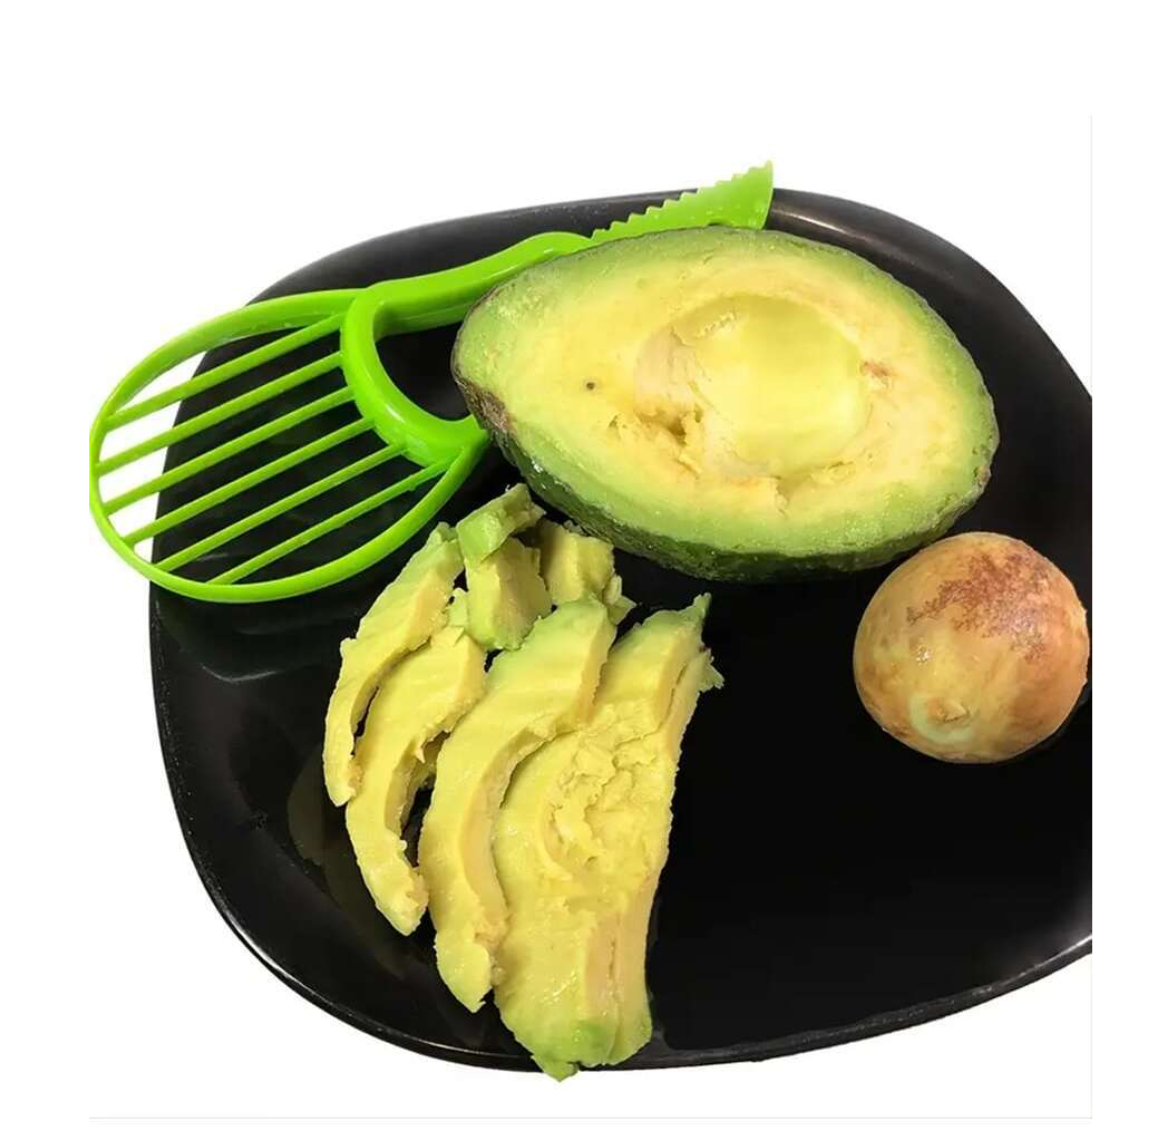 Avocado Magic: 3-in-1 Slicer for Hassle-Free Prep!